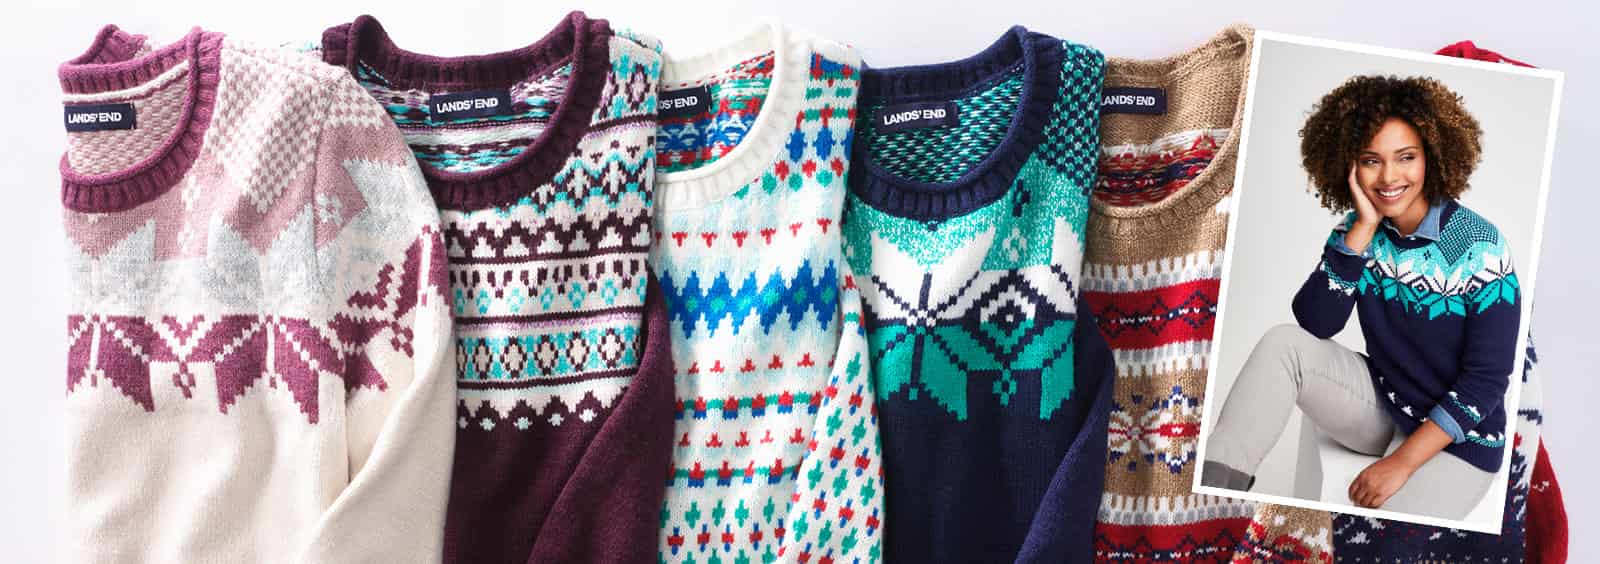 Unsere 3 schönsten und gemütlichsten Pullover in Plusgrößen